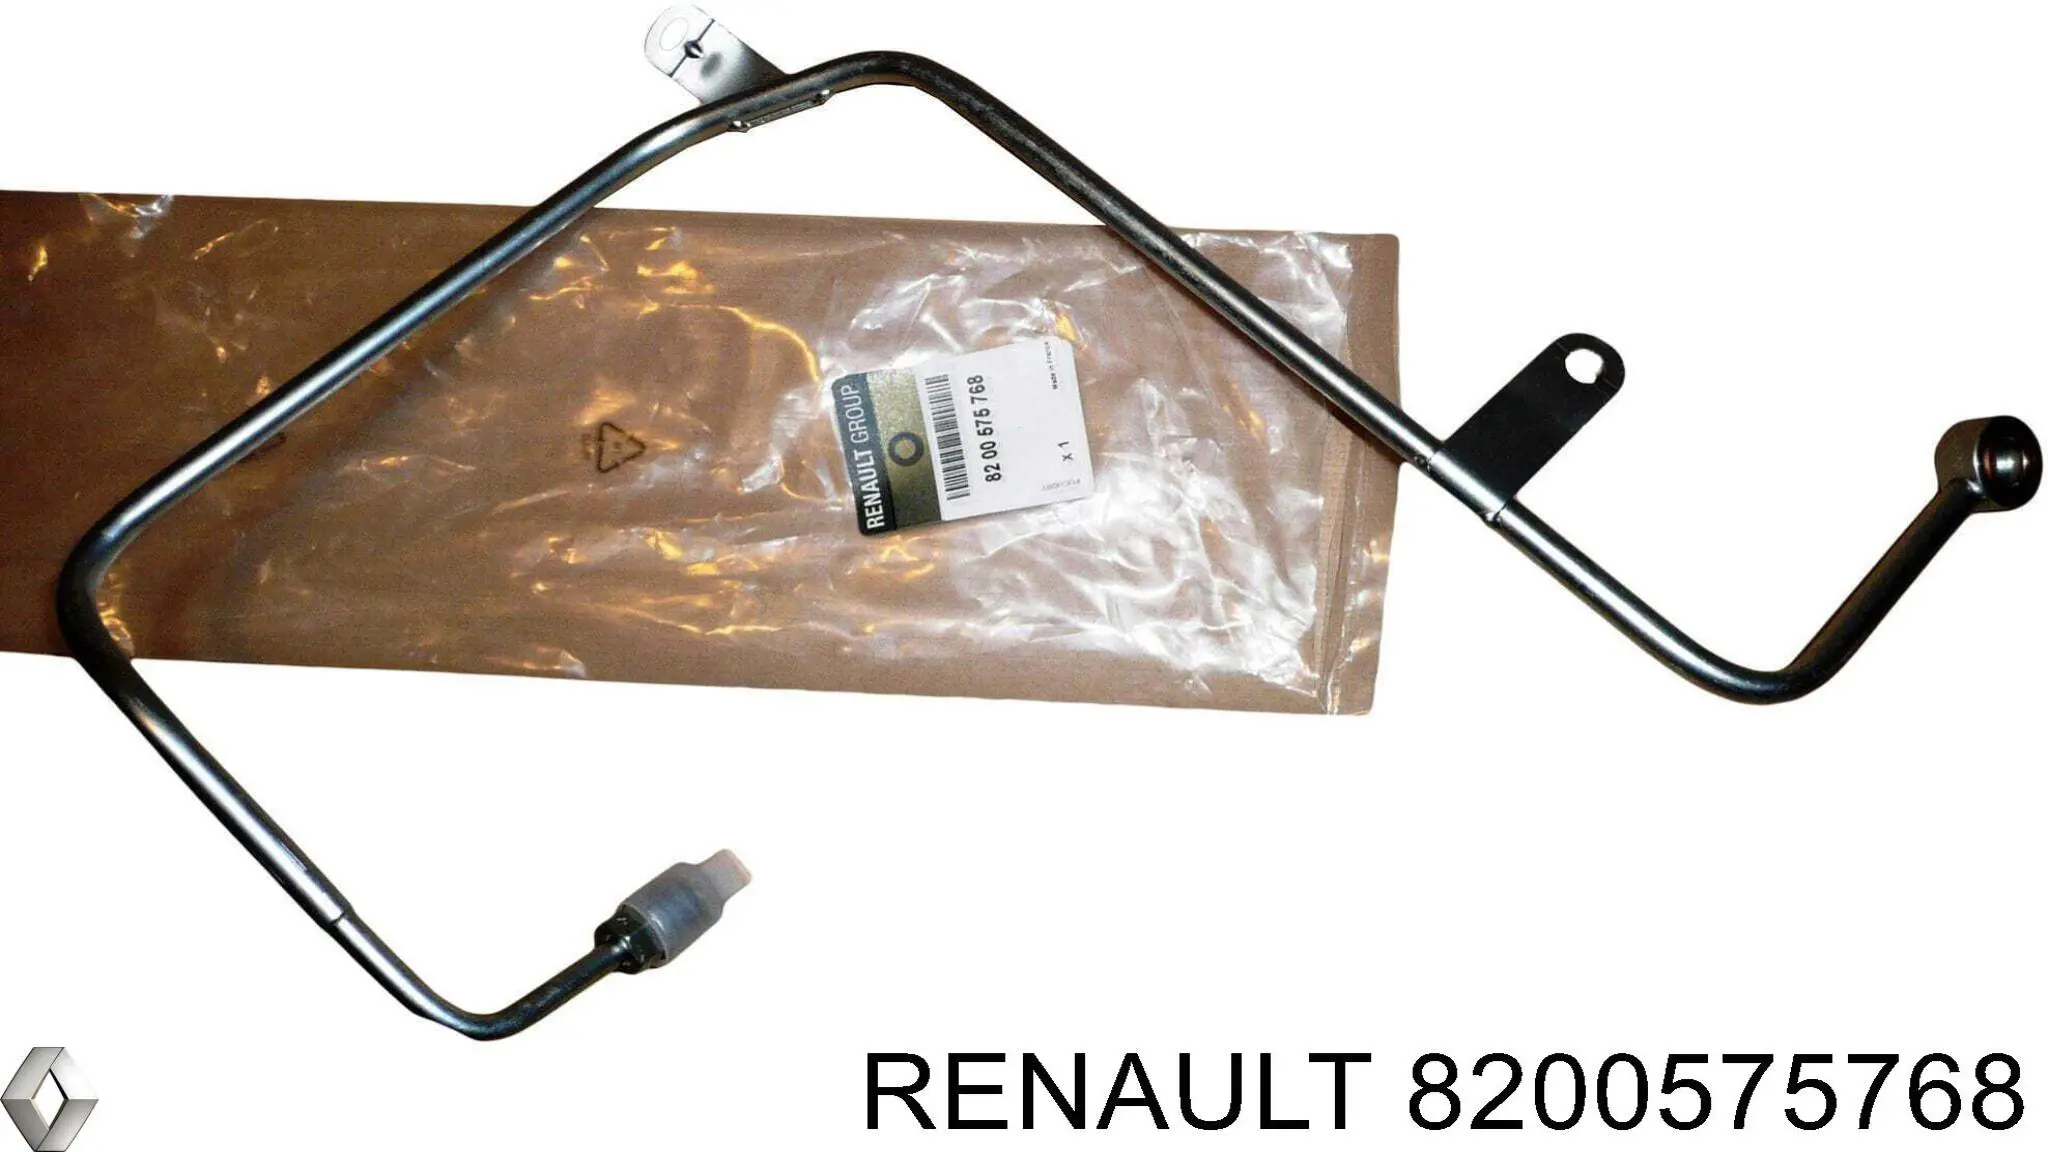 8200575768 Renault (RVI) tubo (manguera Para El Suministro De Aceite A La Turbina)